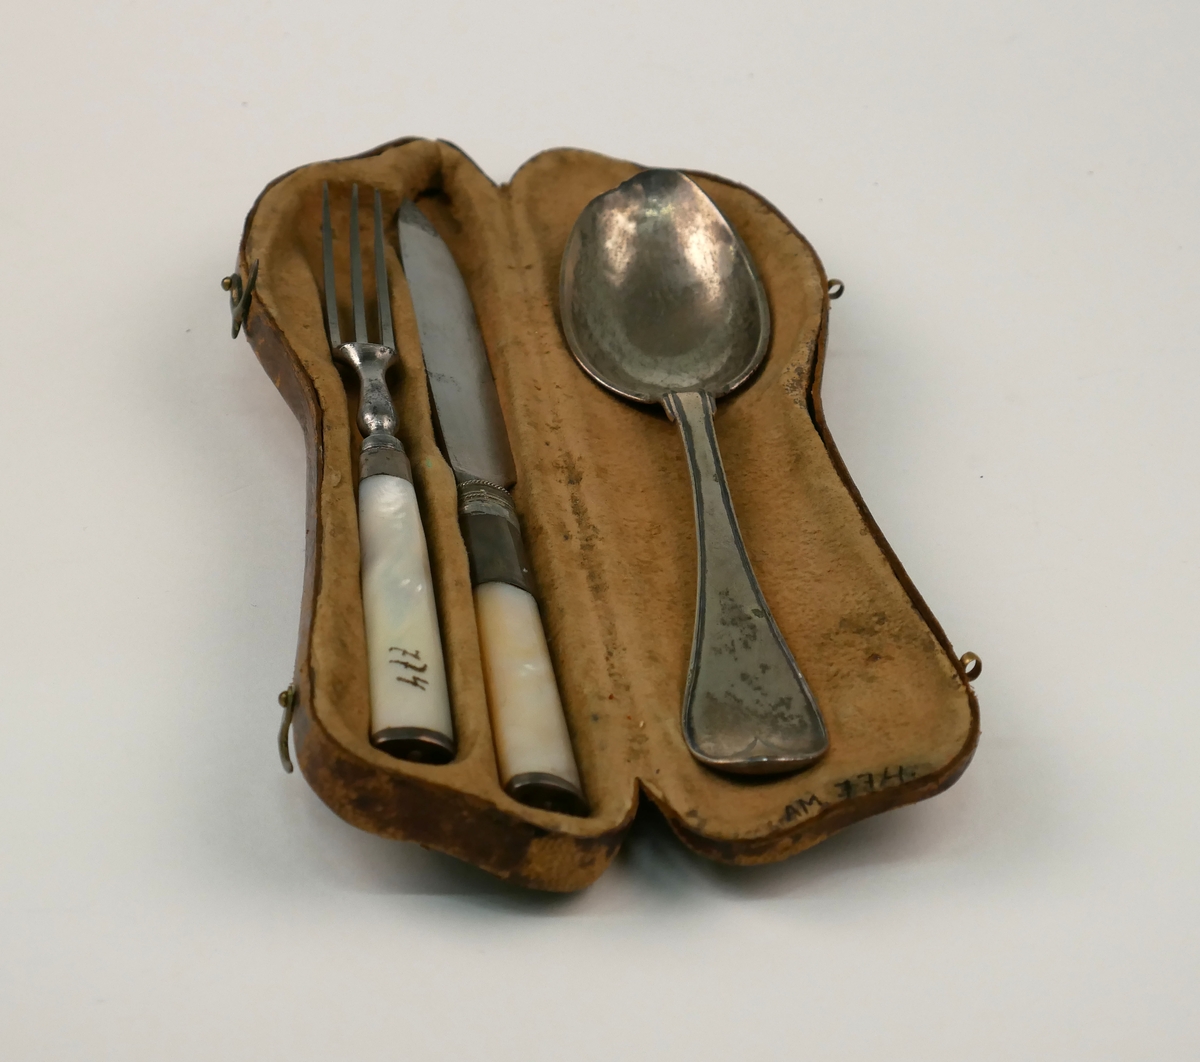 Ett etui med en uppsättning resebestick, kniv, gaffel och sked av silver. Kniv och gaffel med skaft av pärlemor.
Skeden dekorerad med monogram "FML" och stämplad med årsbokstav: F2=1788 samt "Eneroth" = guld- och silversmed Petter Eneroth (1741-1809) mästare från 1771.